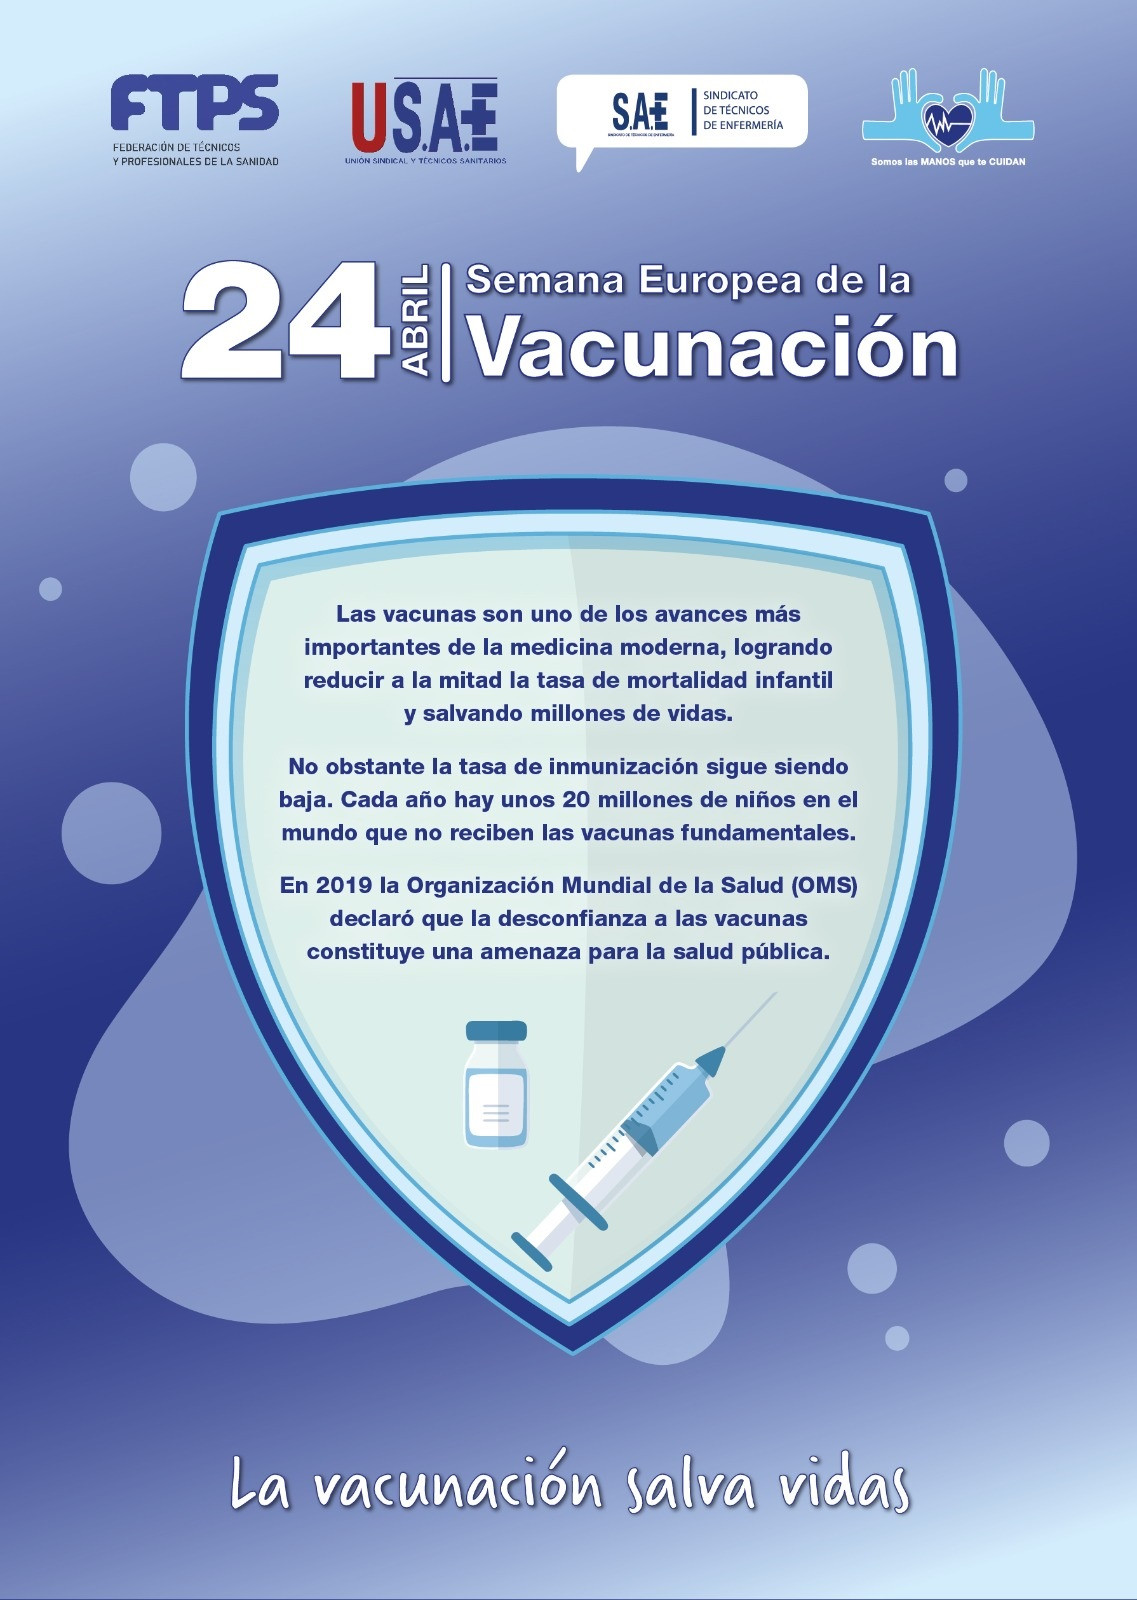 24 4 22 Semana Europea Vacunacion